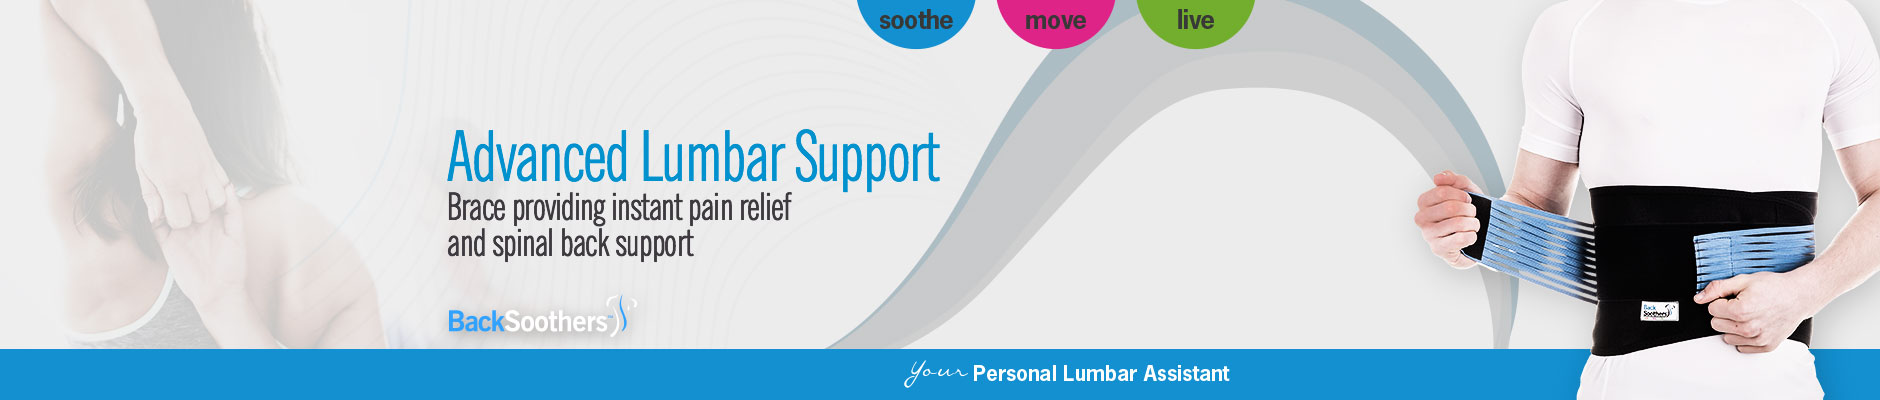 Advanced Lumbar Support